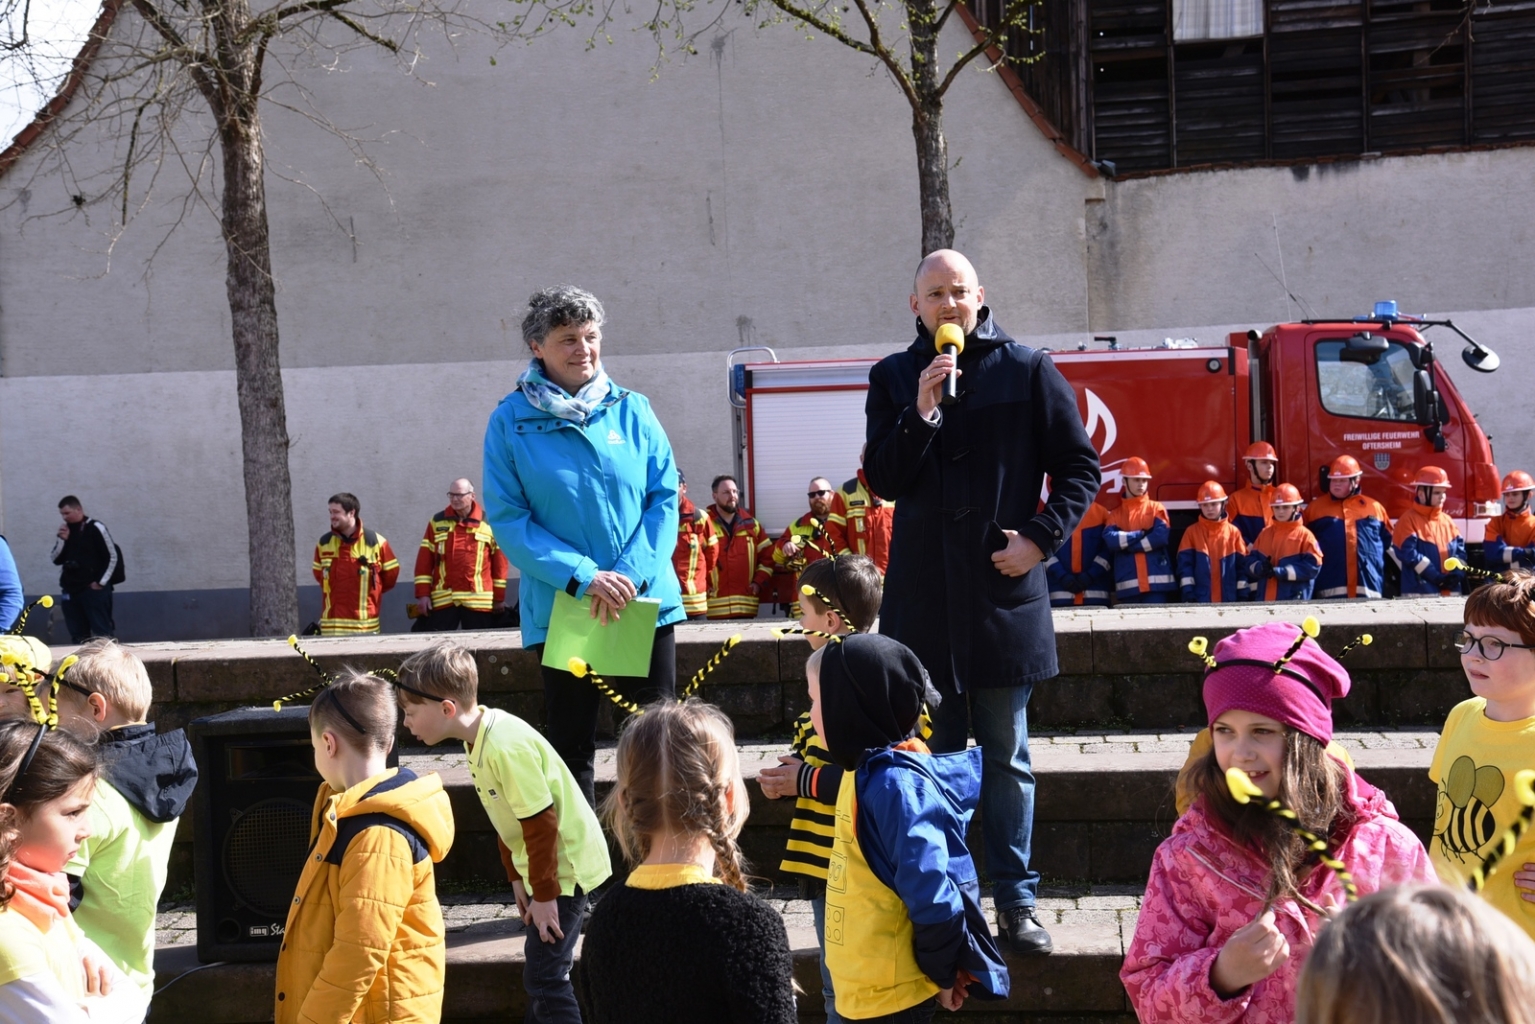 Konrektorin Ines Hieltscher von der FES und Bürgermeister Pascal Seidel begrüßten die Gäste im Schulhof der FES.